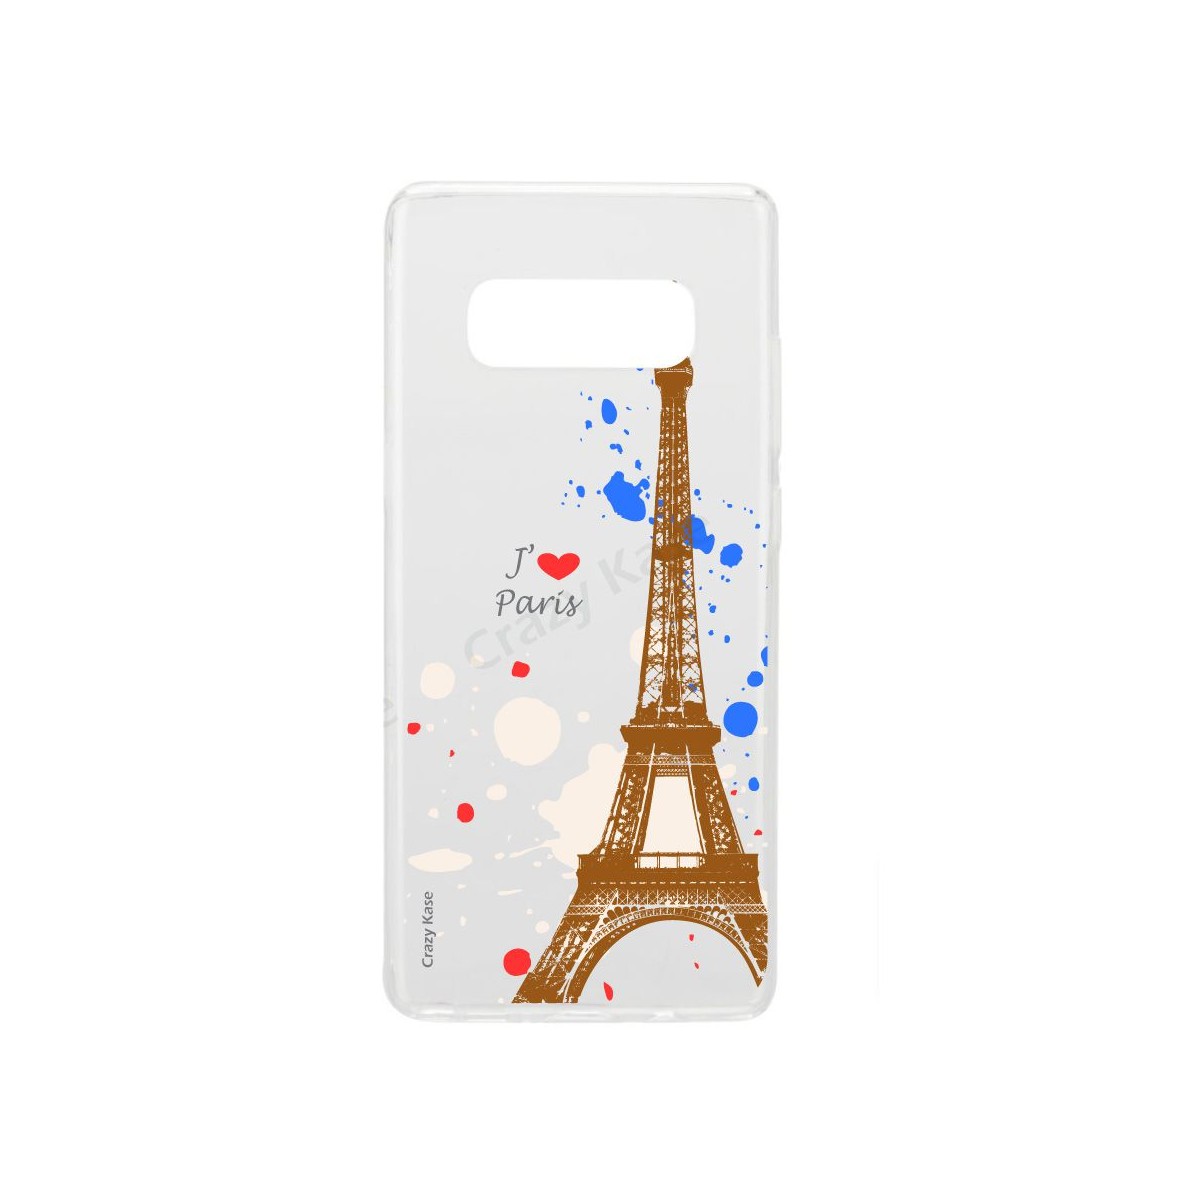 Coque Galaxy S10 Plus souple Paris -  Crazy Kase